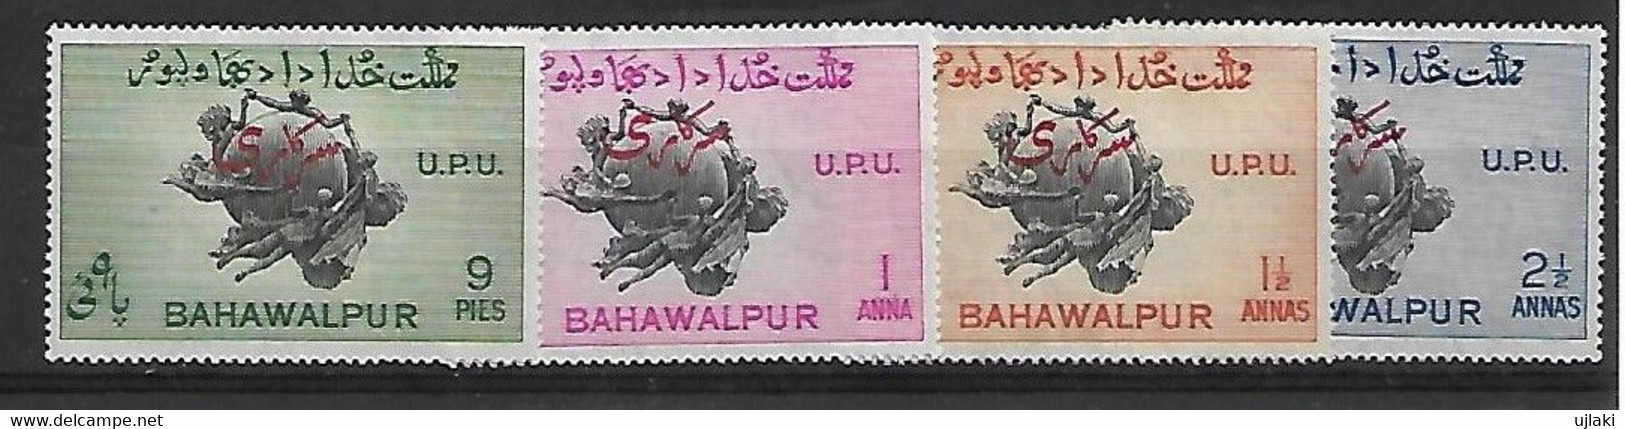 BAHAWALPUR  Timbres De Service: Série:75ème Anniversaire De L'UPU ,surcharge Rouge    N°25 à 28   Année 1949 - Bahawalpur